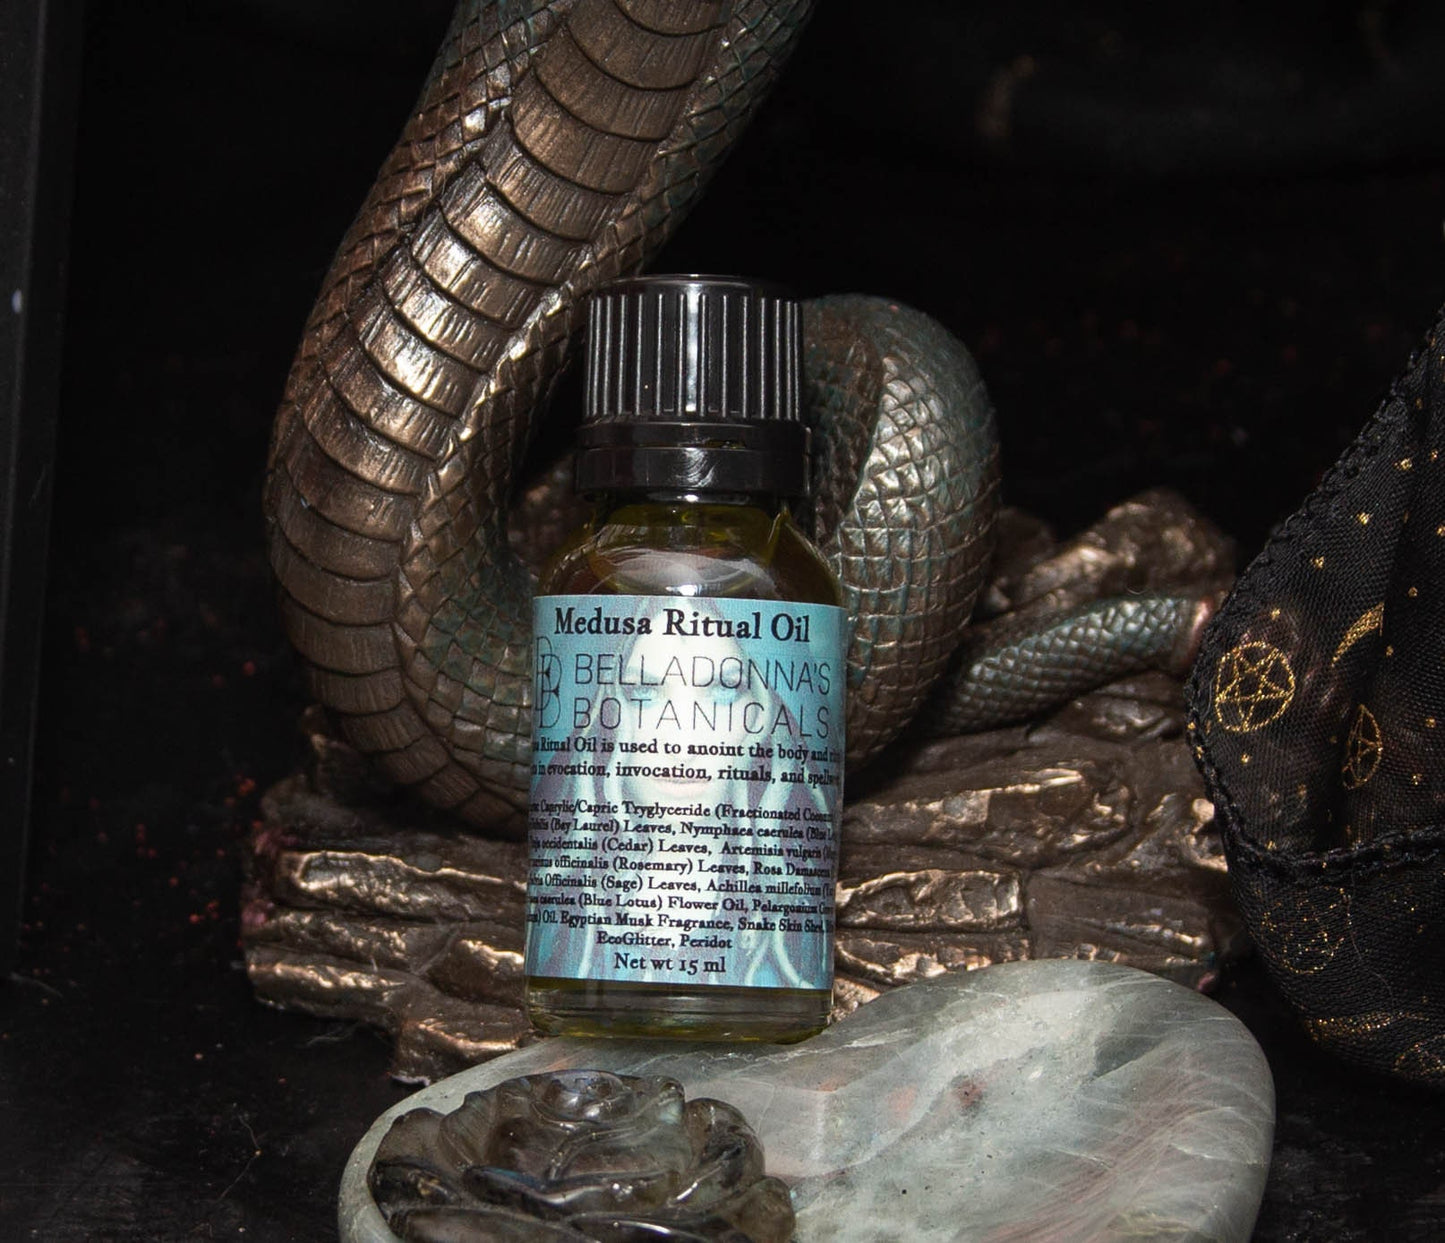 Medusa Ritual Oil